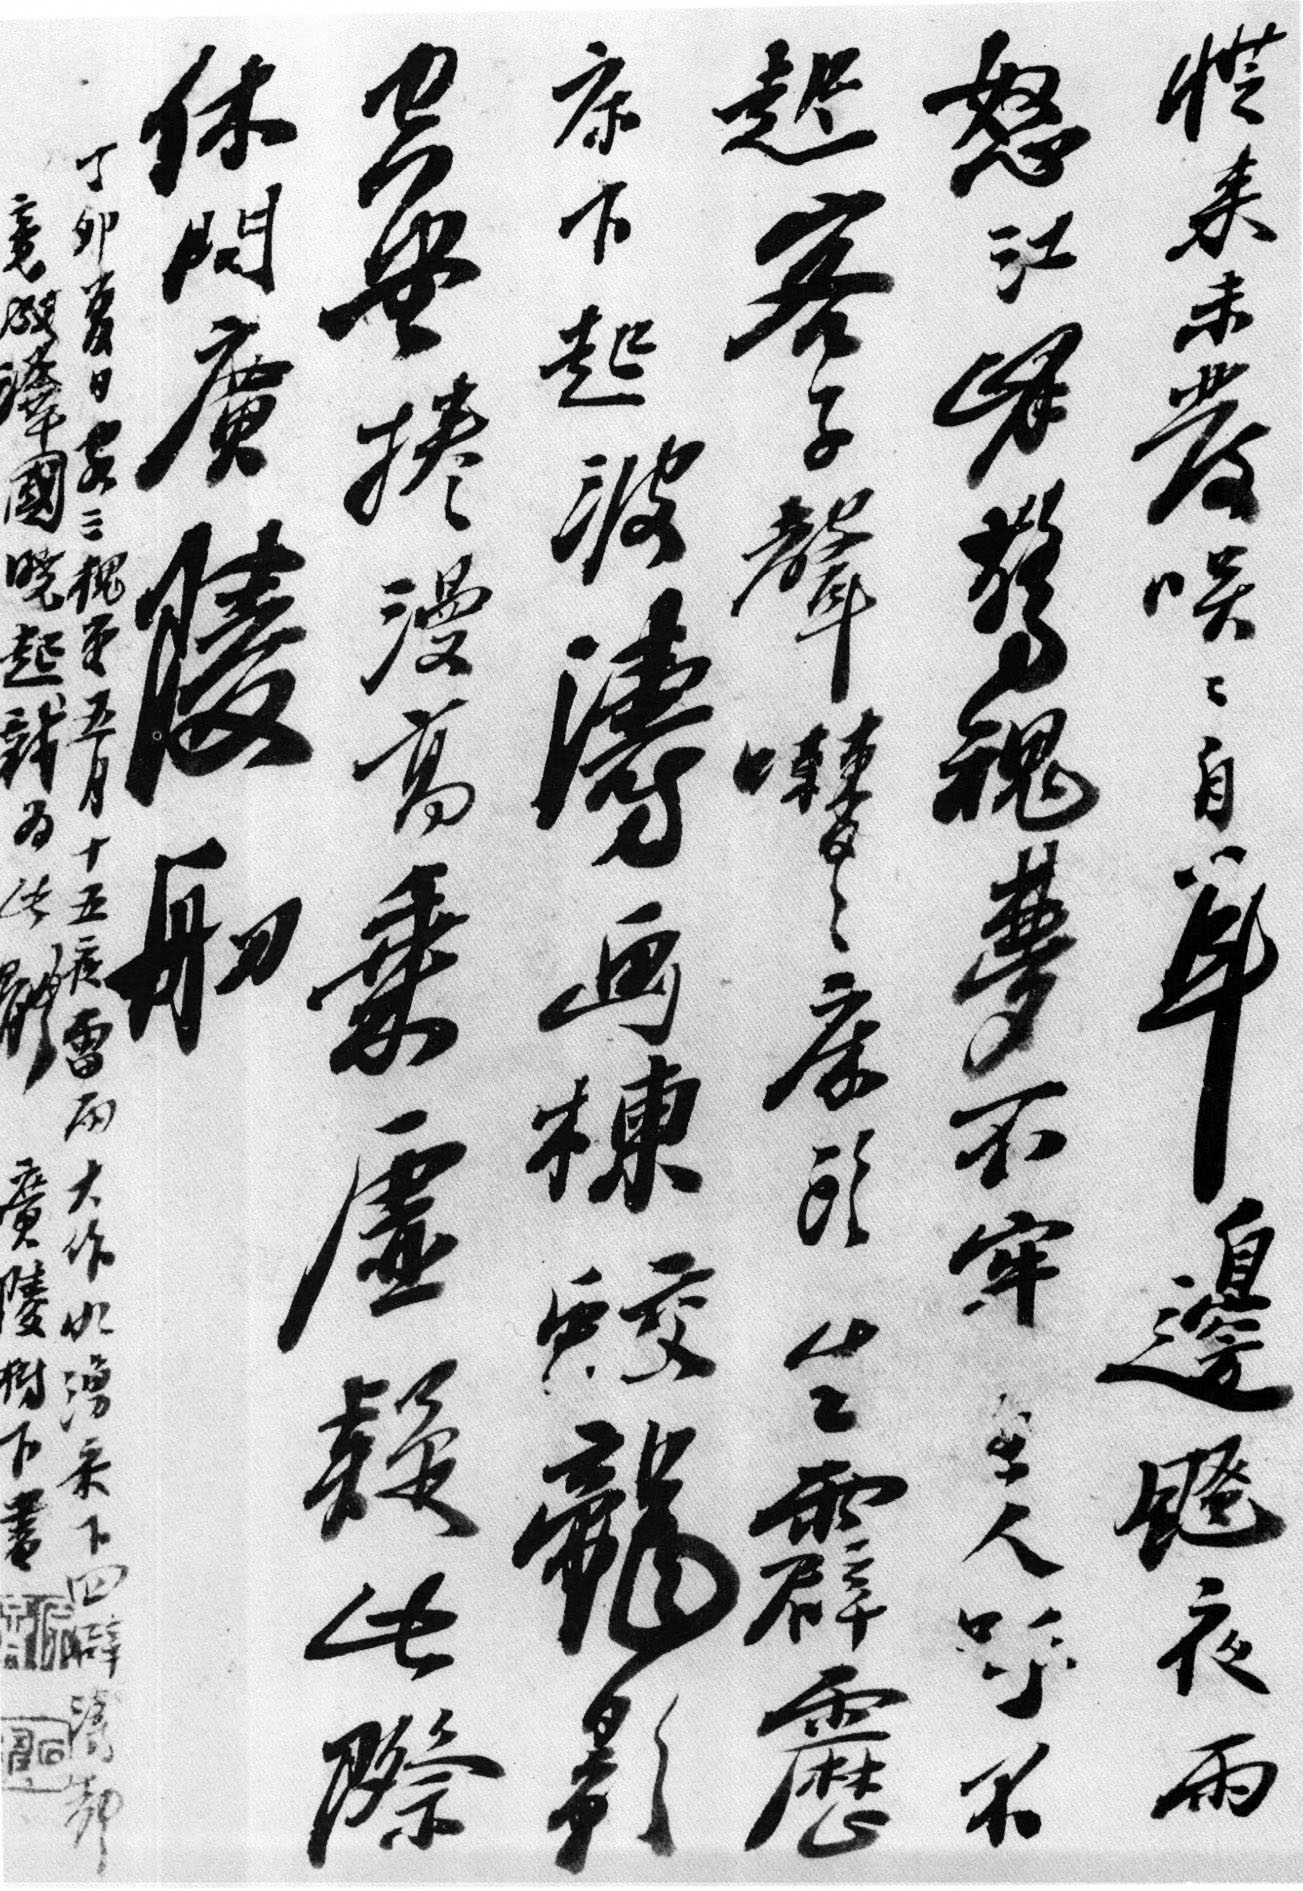 石涛行书《客三槐堂诗页》-北京故宫博物院藏 (图1)